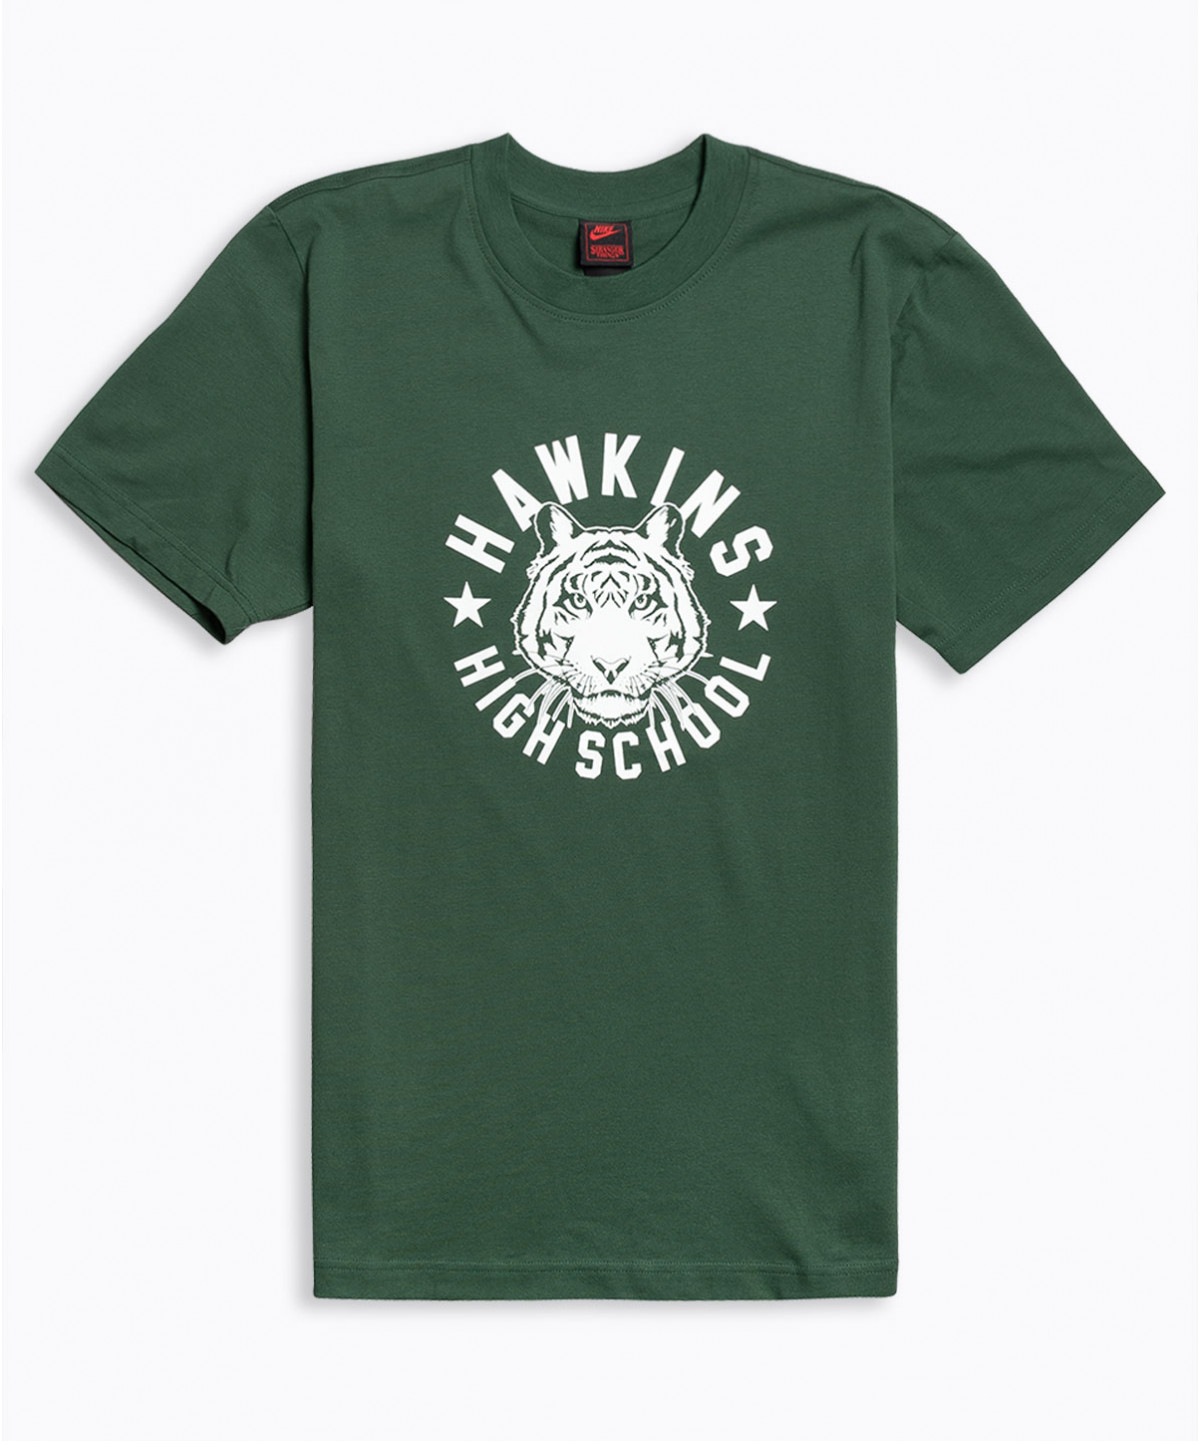 nike-x-stranger-things-t-shirt-ck2342-323-31.png